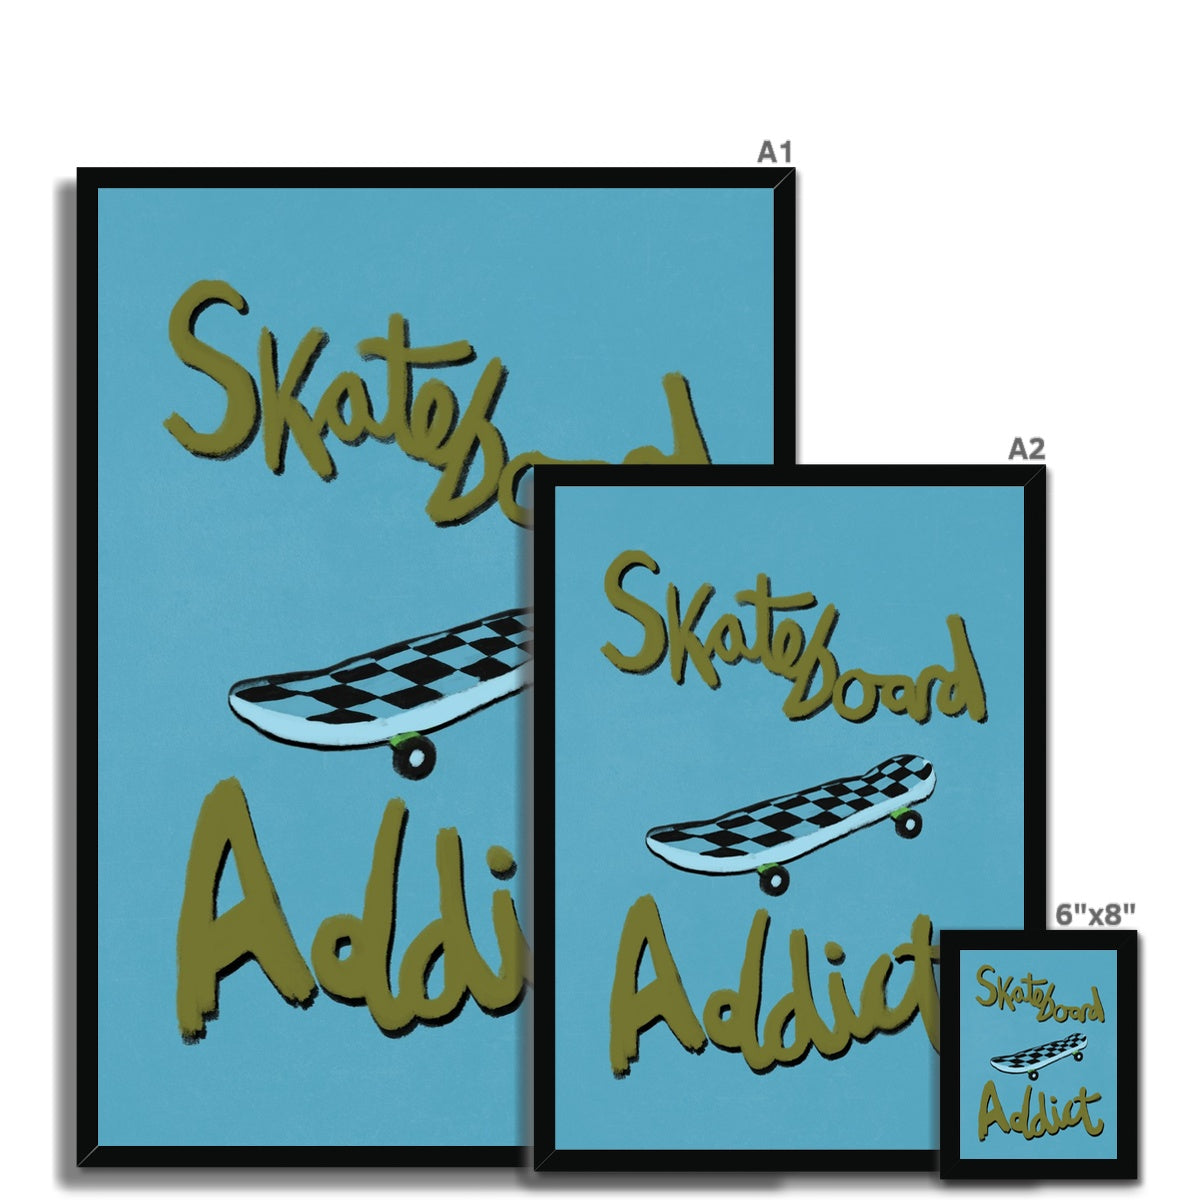 Skateboard Addict - Olive Green, Blue Framed Print